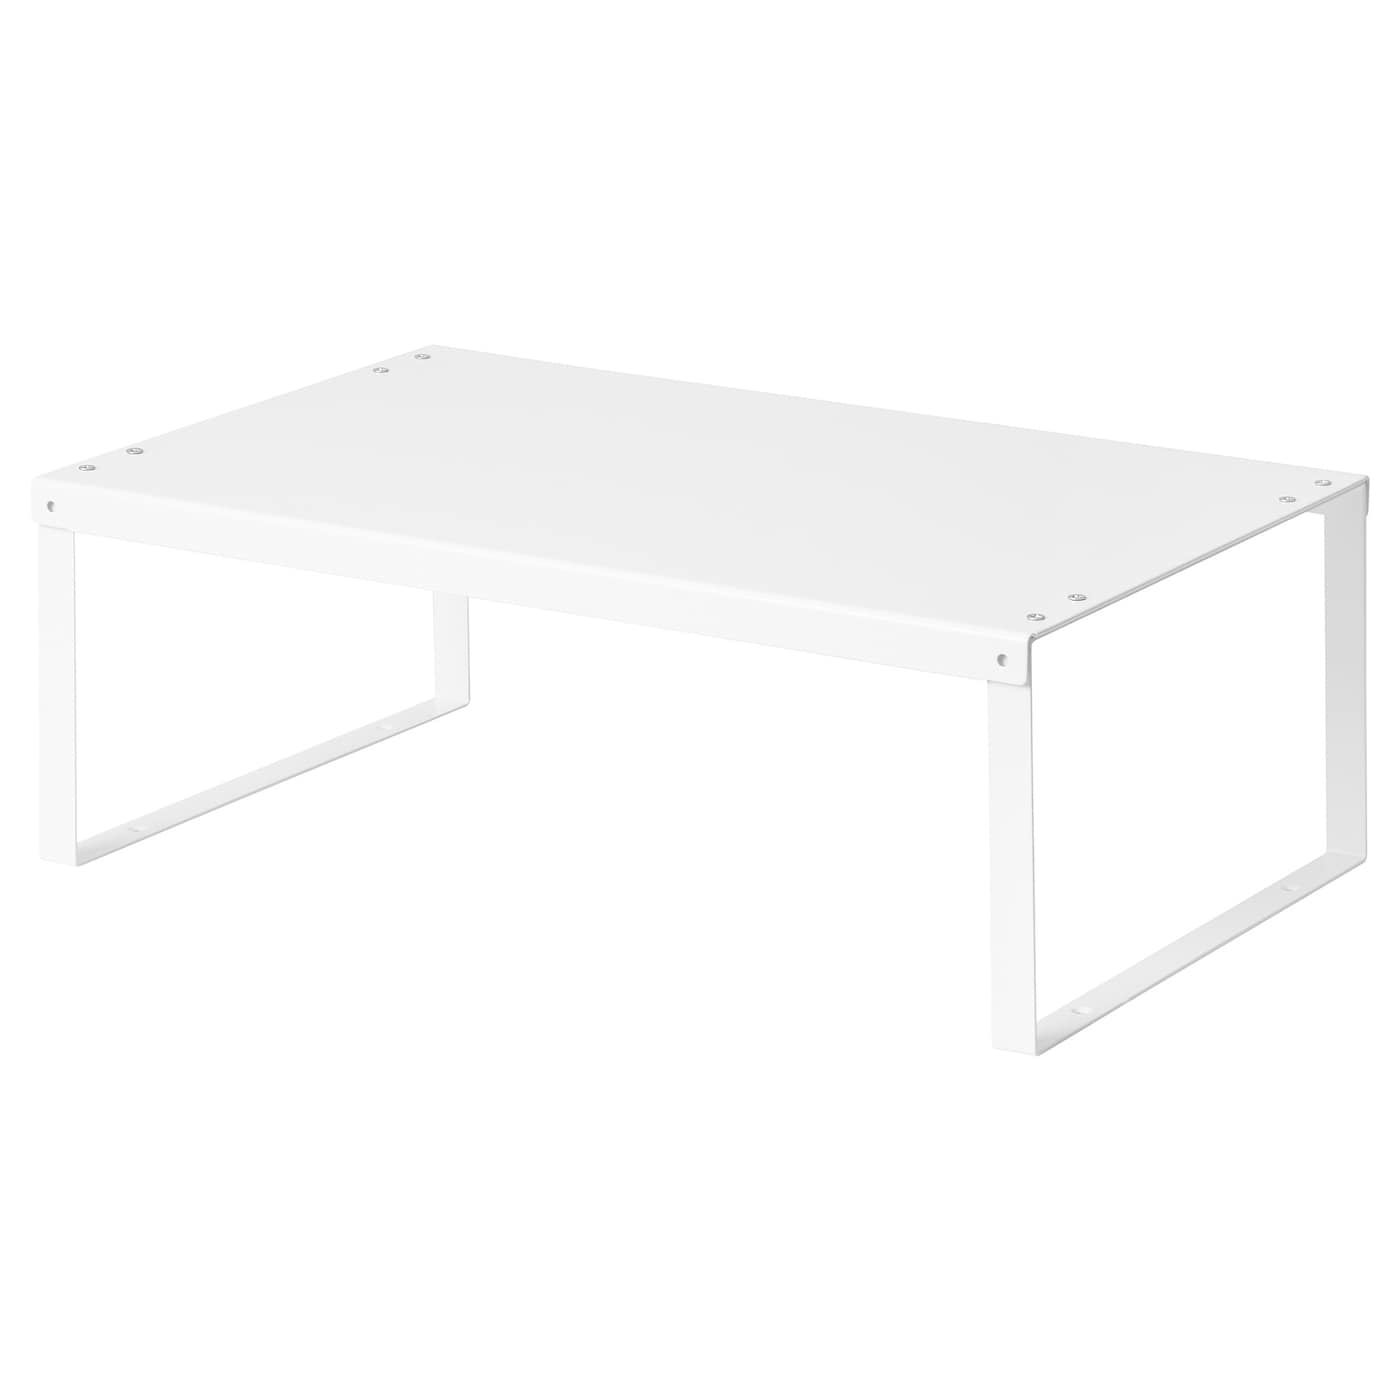 Вставная полка - VARIERA  IKEA/ ВАРЬЕРА ИКЕА, 46х16 см, белый